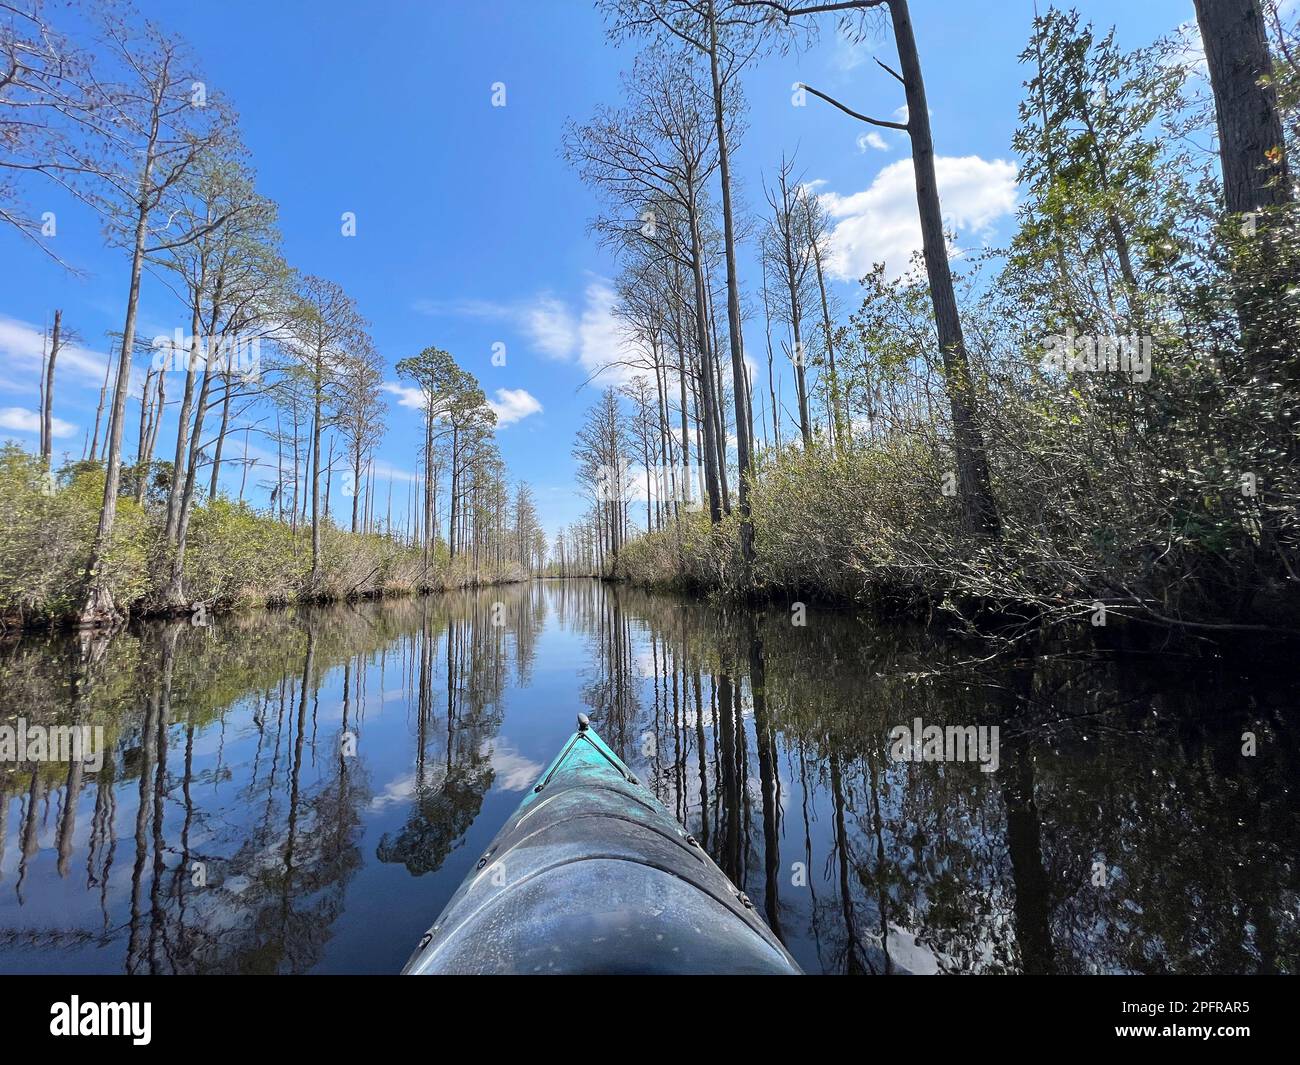 Im Okefenokee Sumpf, einem National Wildlife Refuge zwischen Florida und Georgia im Süden der USA, könnt ihr mit dem Kajak die Landschaft genießen. Stockfoto